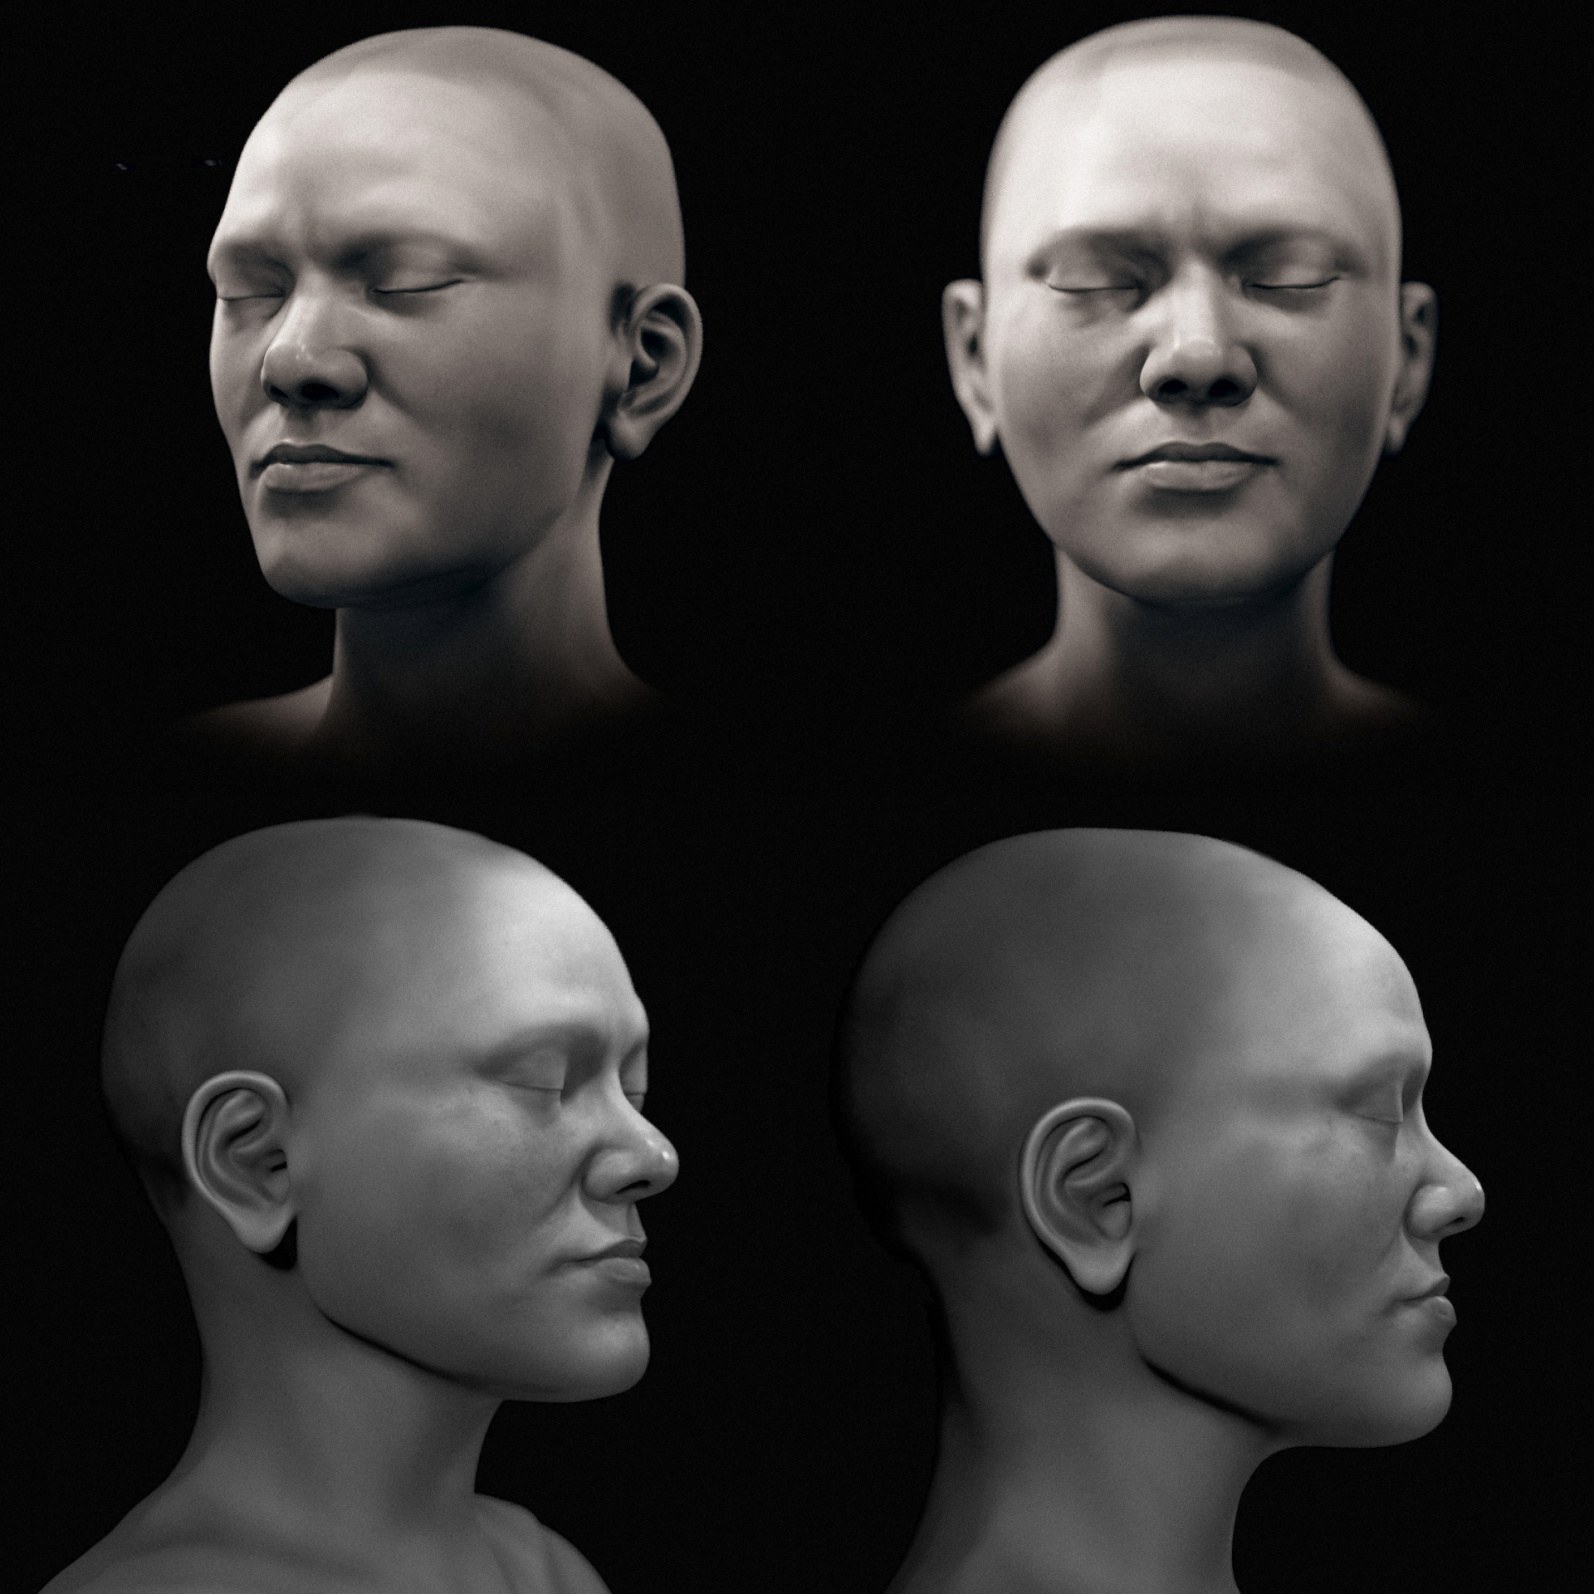 Una versión en blanco y negro de la aproximación facial.